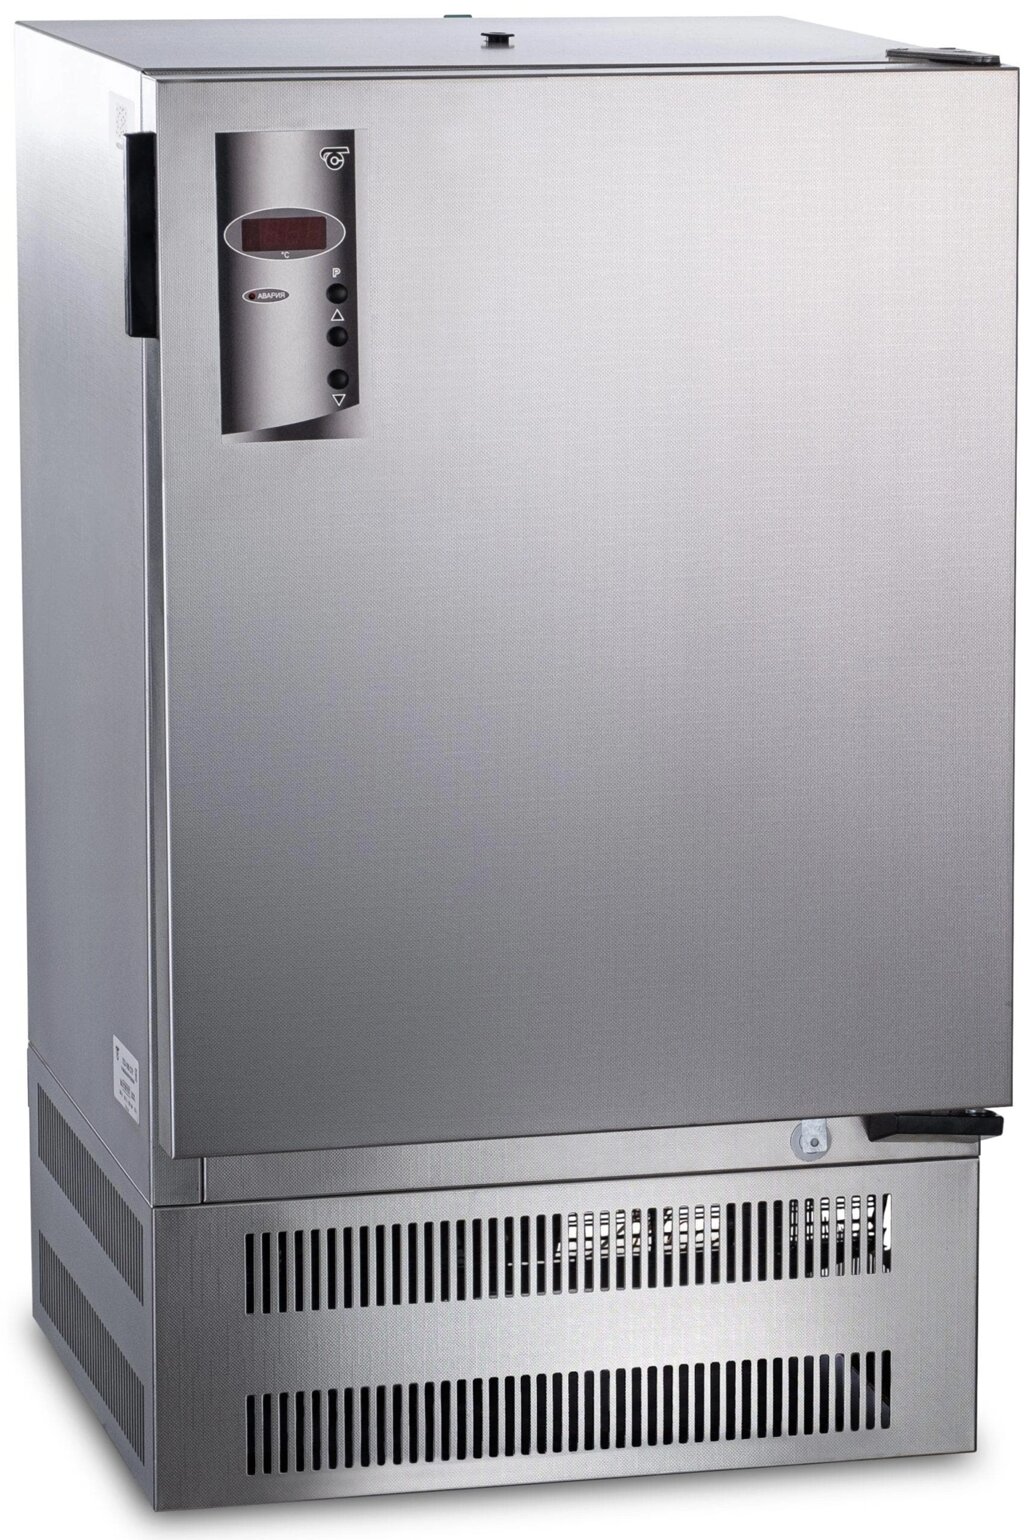 Суховоздушный термостат, 80 литров, 5-60 °С, с охлаждением, нержавеющая сталь от компании Labdevices - Лабораторное оборудование и посуда - фото 1